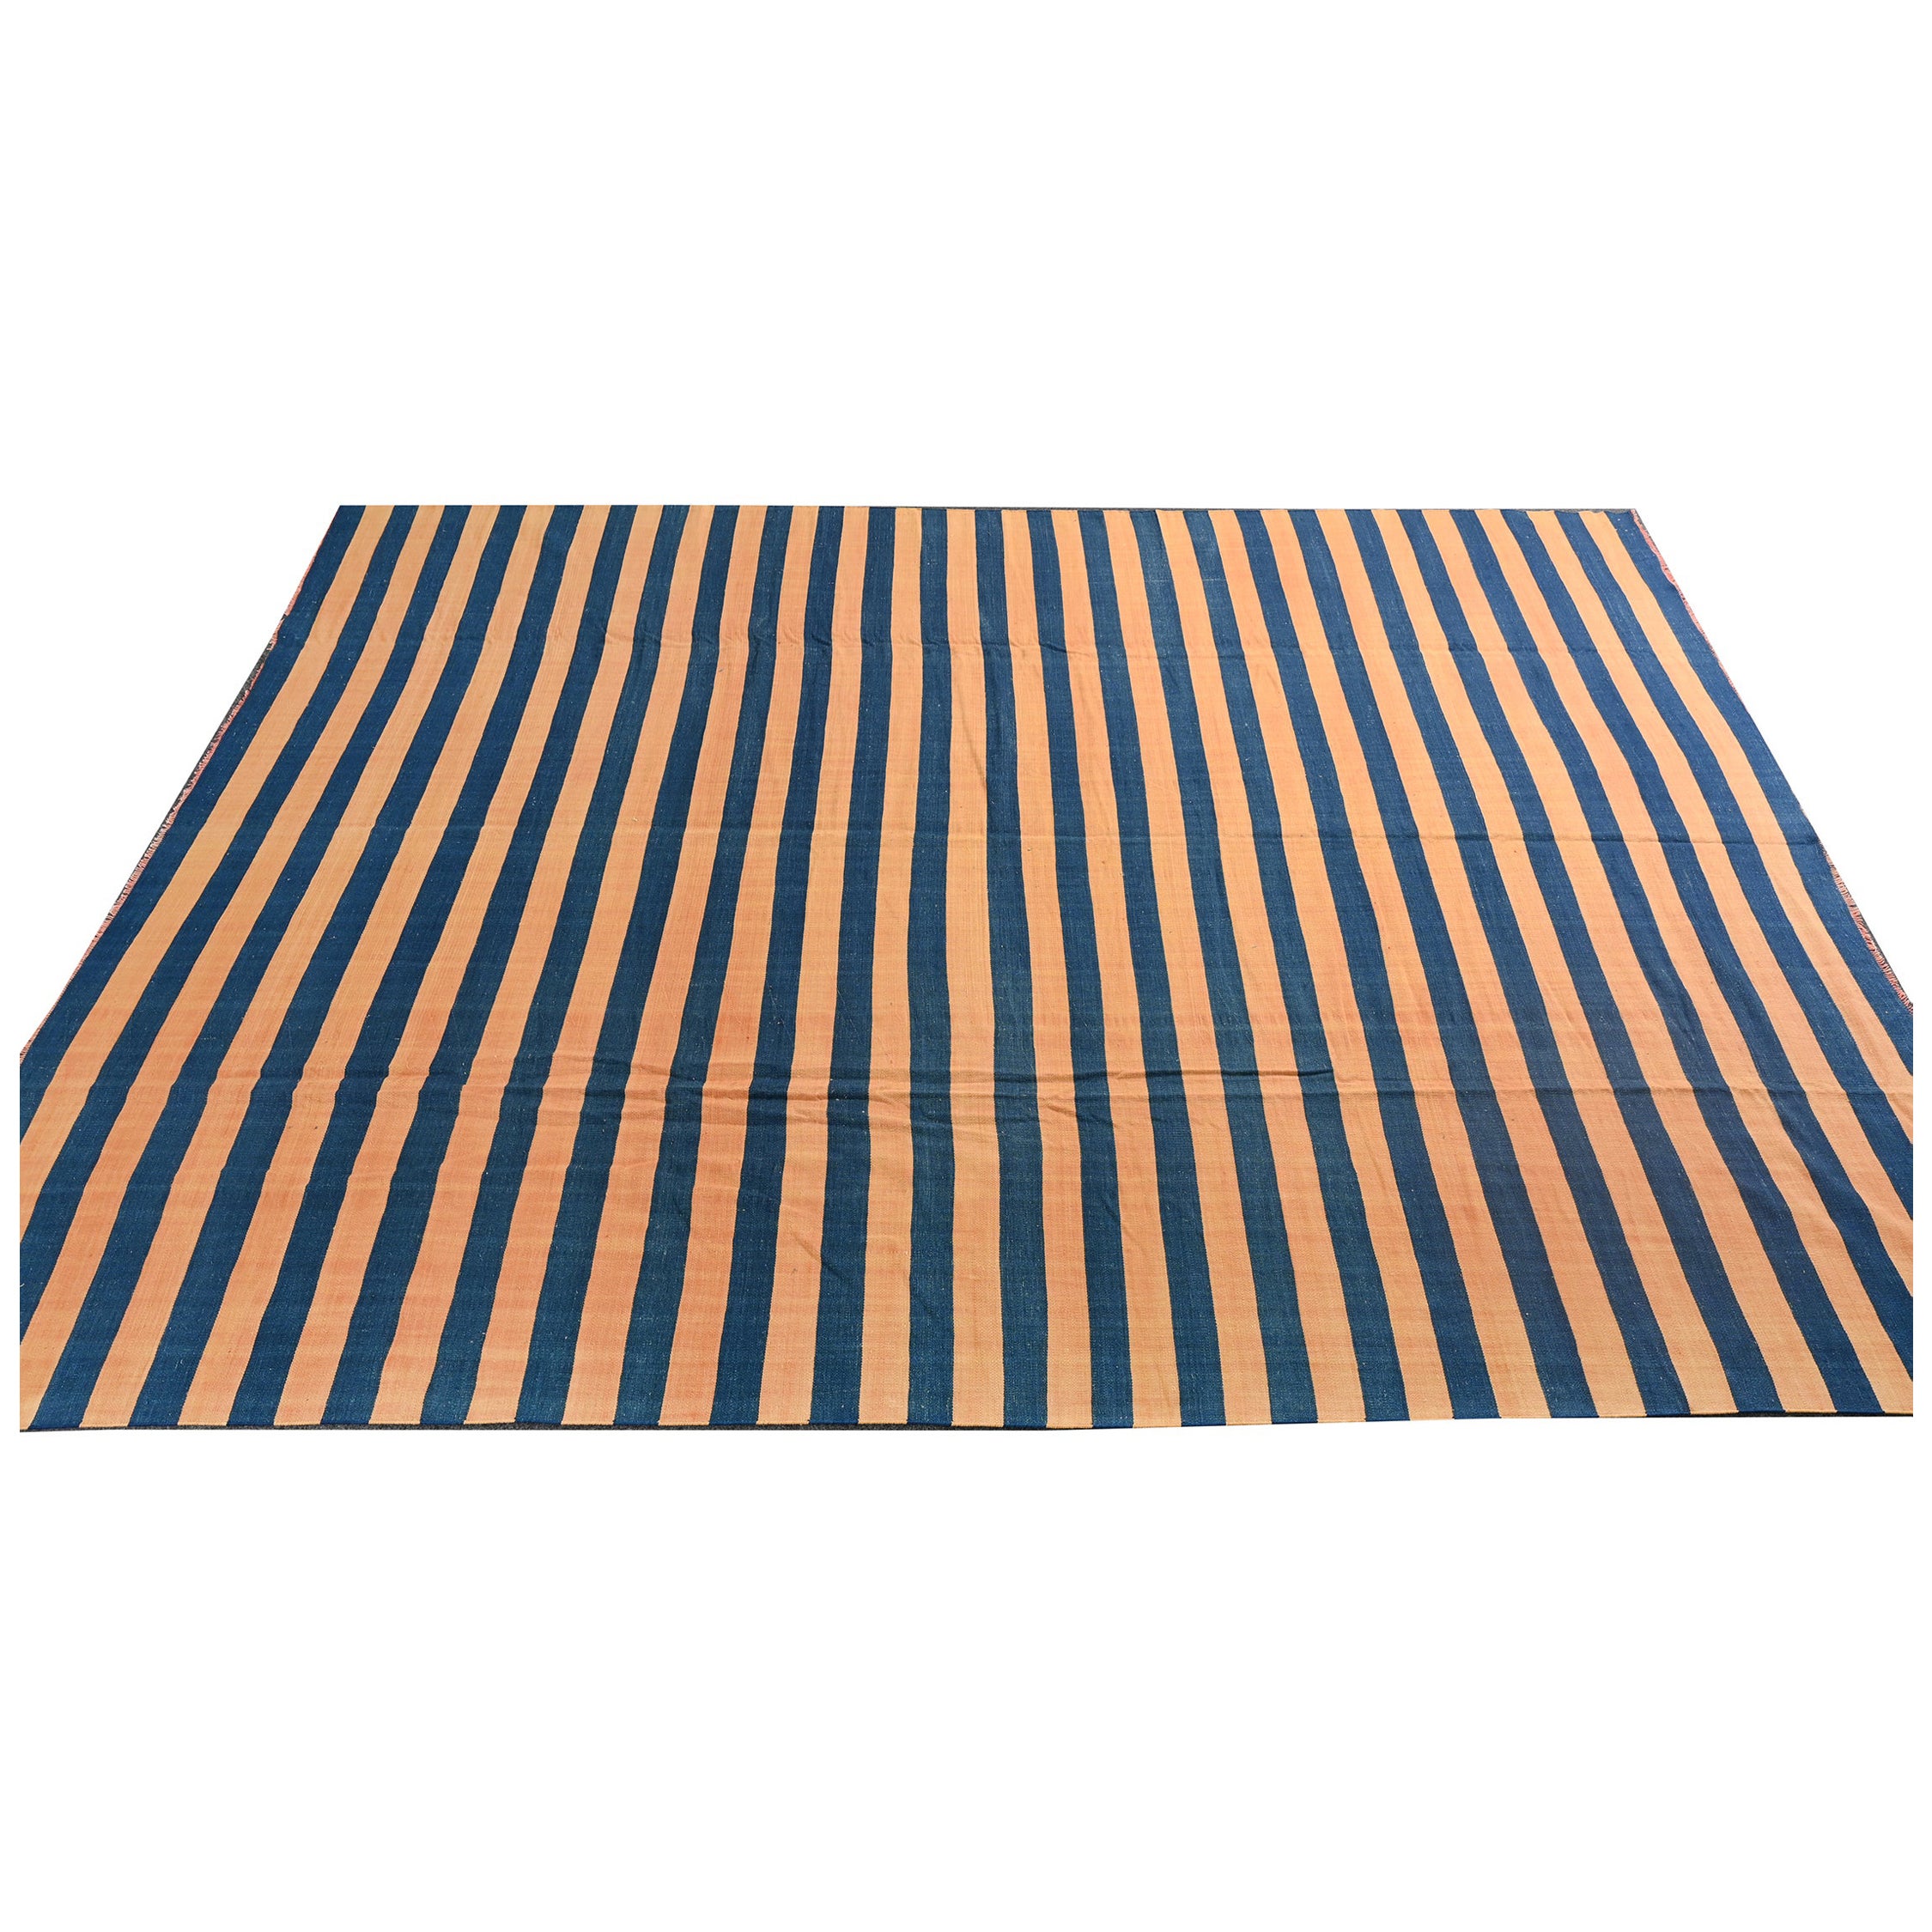 Vintage Dhurrie Flat Weave in Blue and Orange Stripes by Rug & Kilim